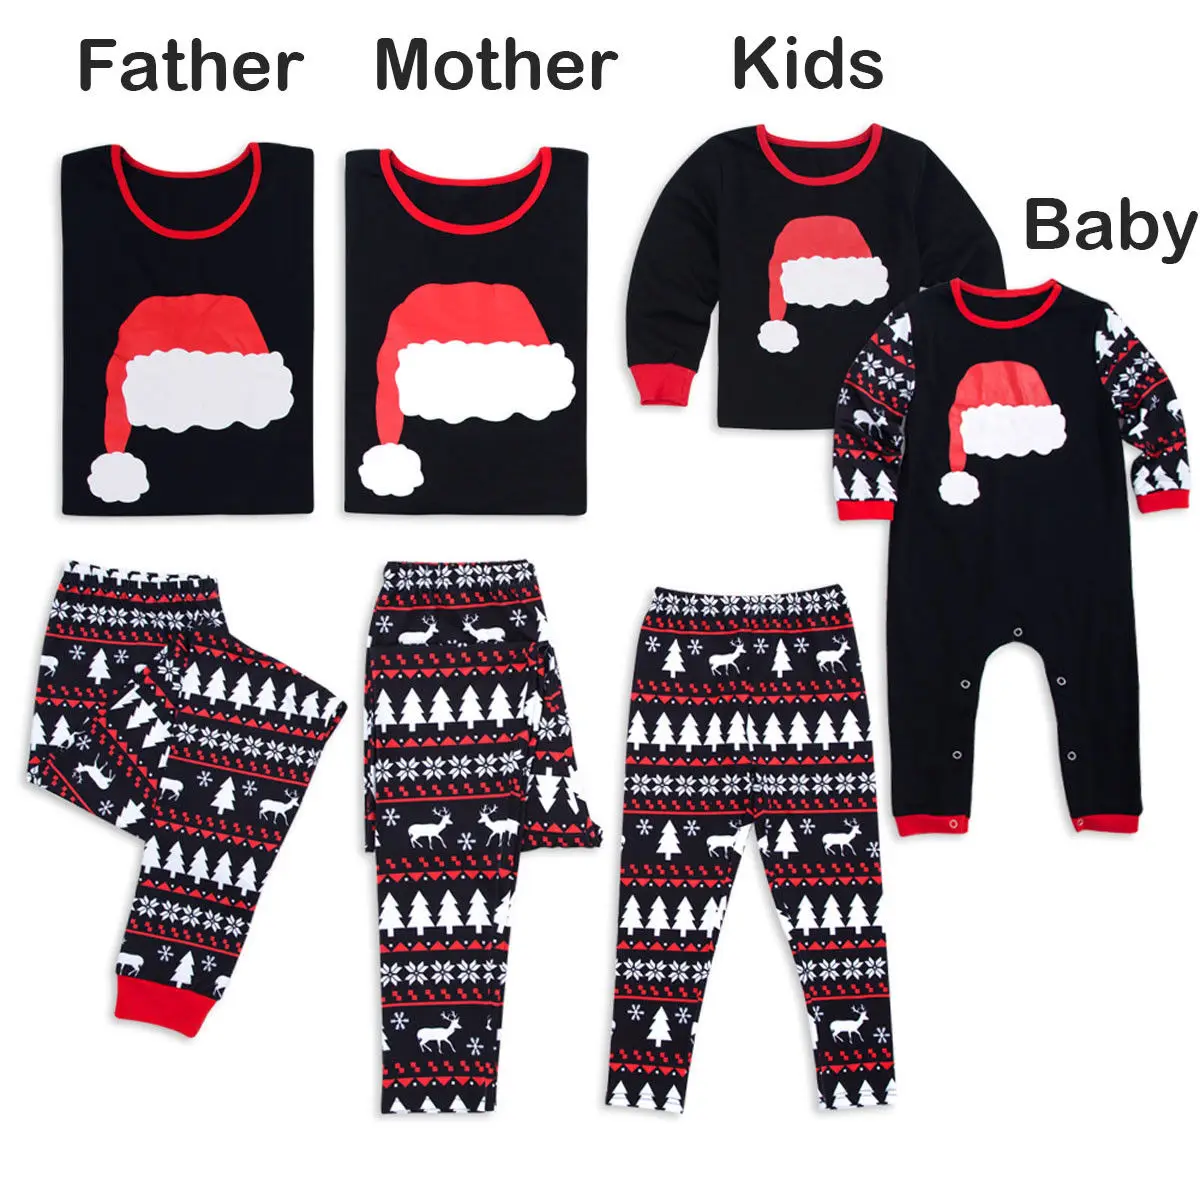 

Xmas Family Matching Pyjamas Clothes Mom Dad Christmas Pajamas PJs Sets Xmas Sleepwear Nightwear Homewear Photograph Prop